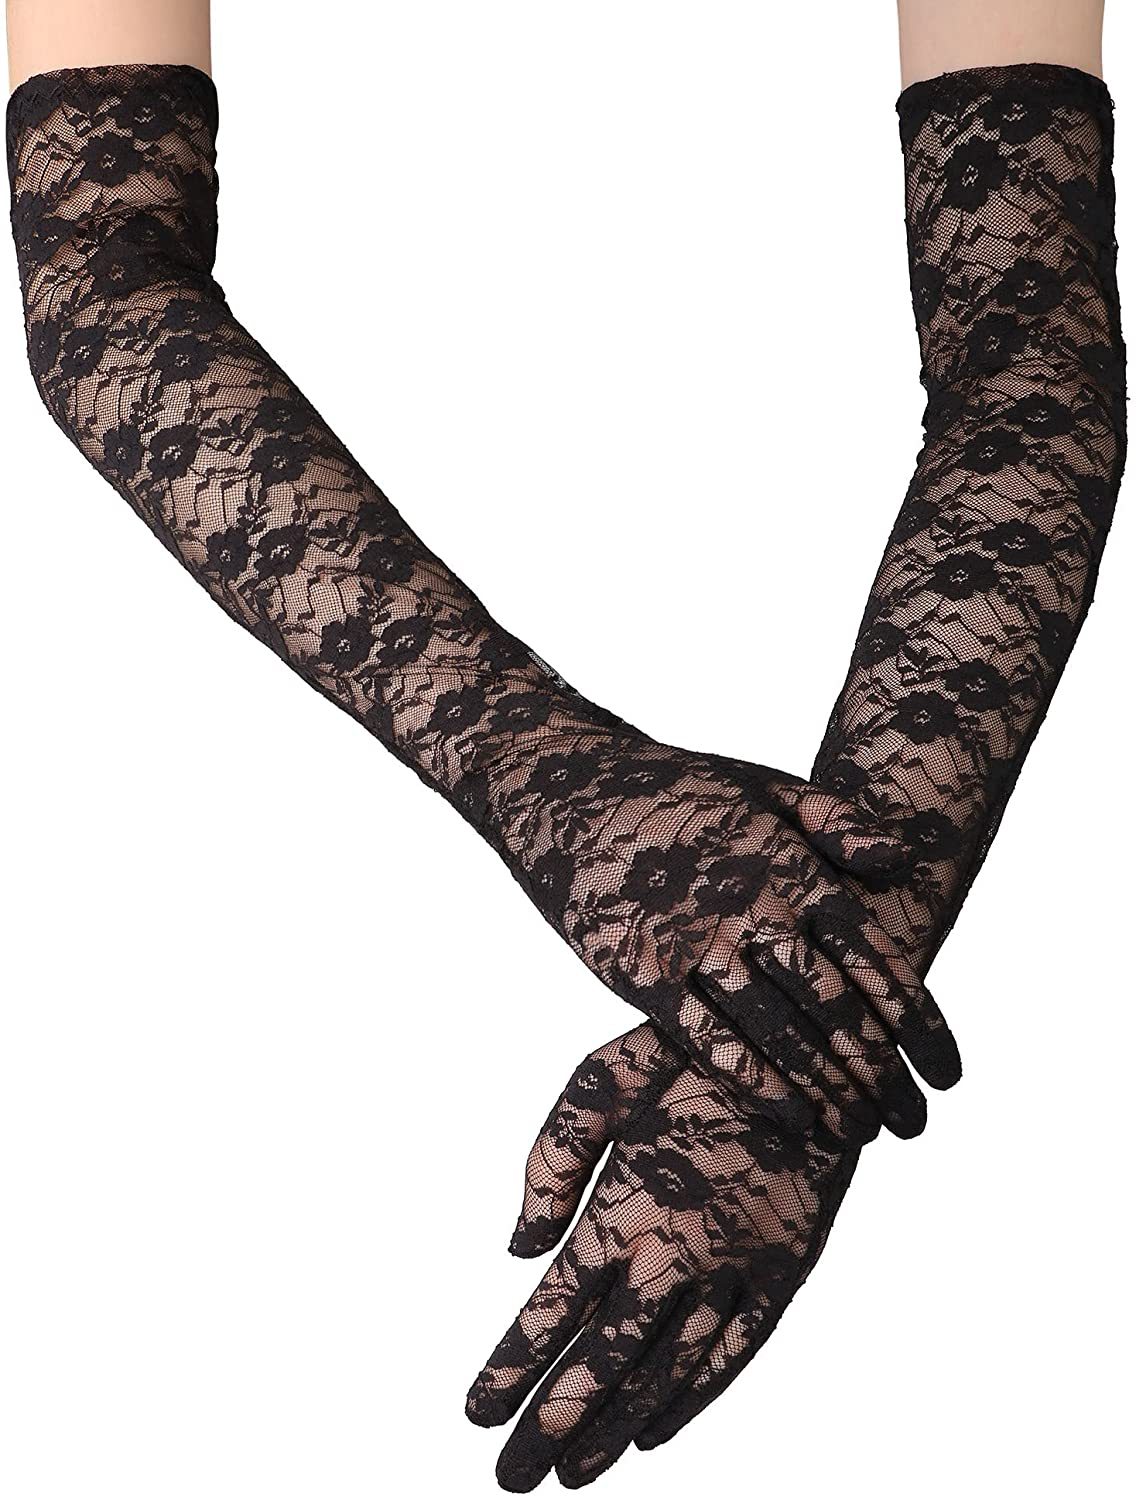 Găng tay nữ dáng dài chất liệu ren, trang trí hoa xinh xắn, đủ 2 màu đen, trắng BT20